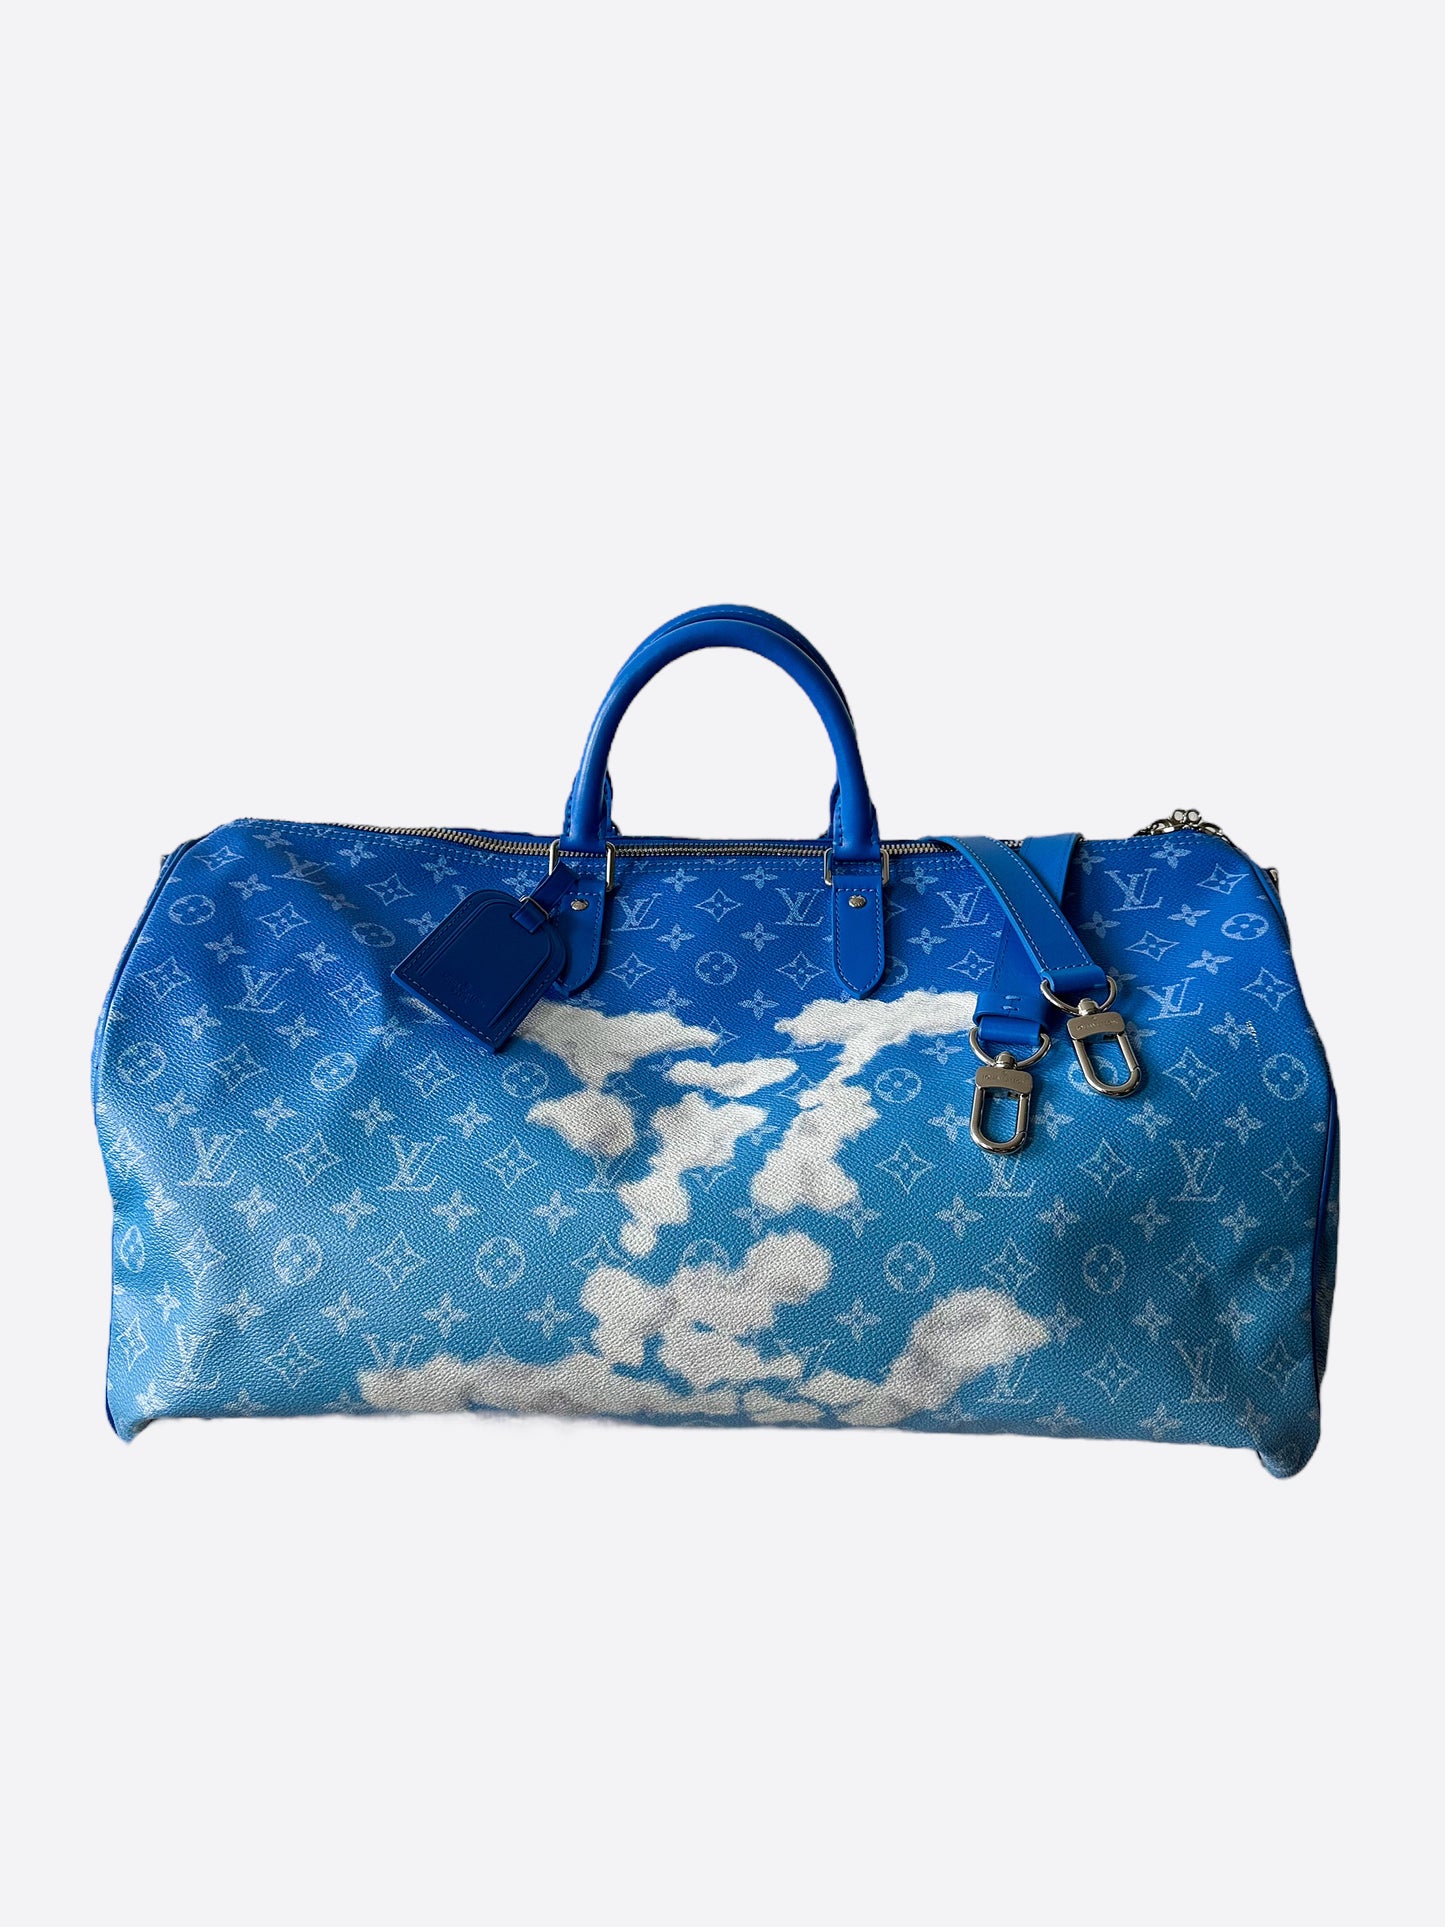 lv blue cloud bag